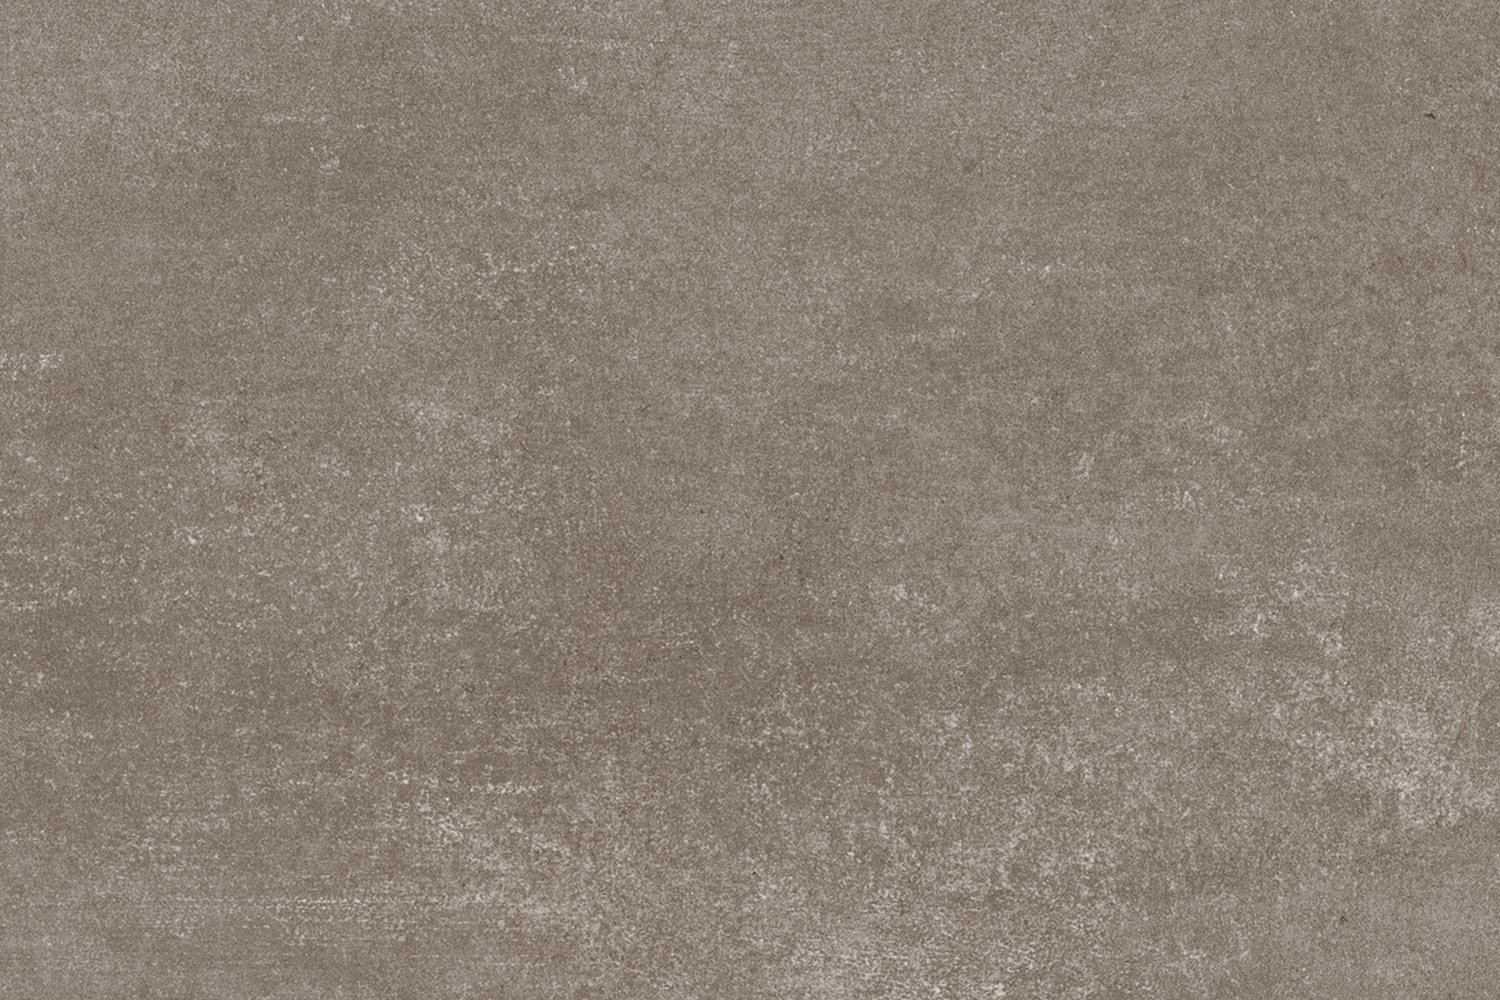 Boden/Wand Fliese Rocky Art Fango matt 60x60 1,44 m2 R10